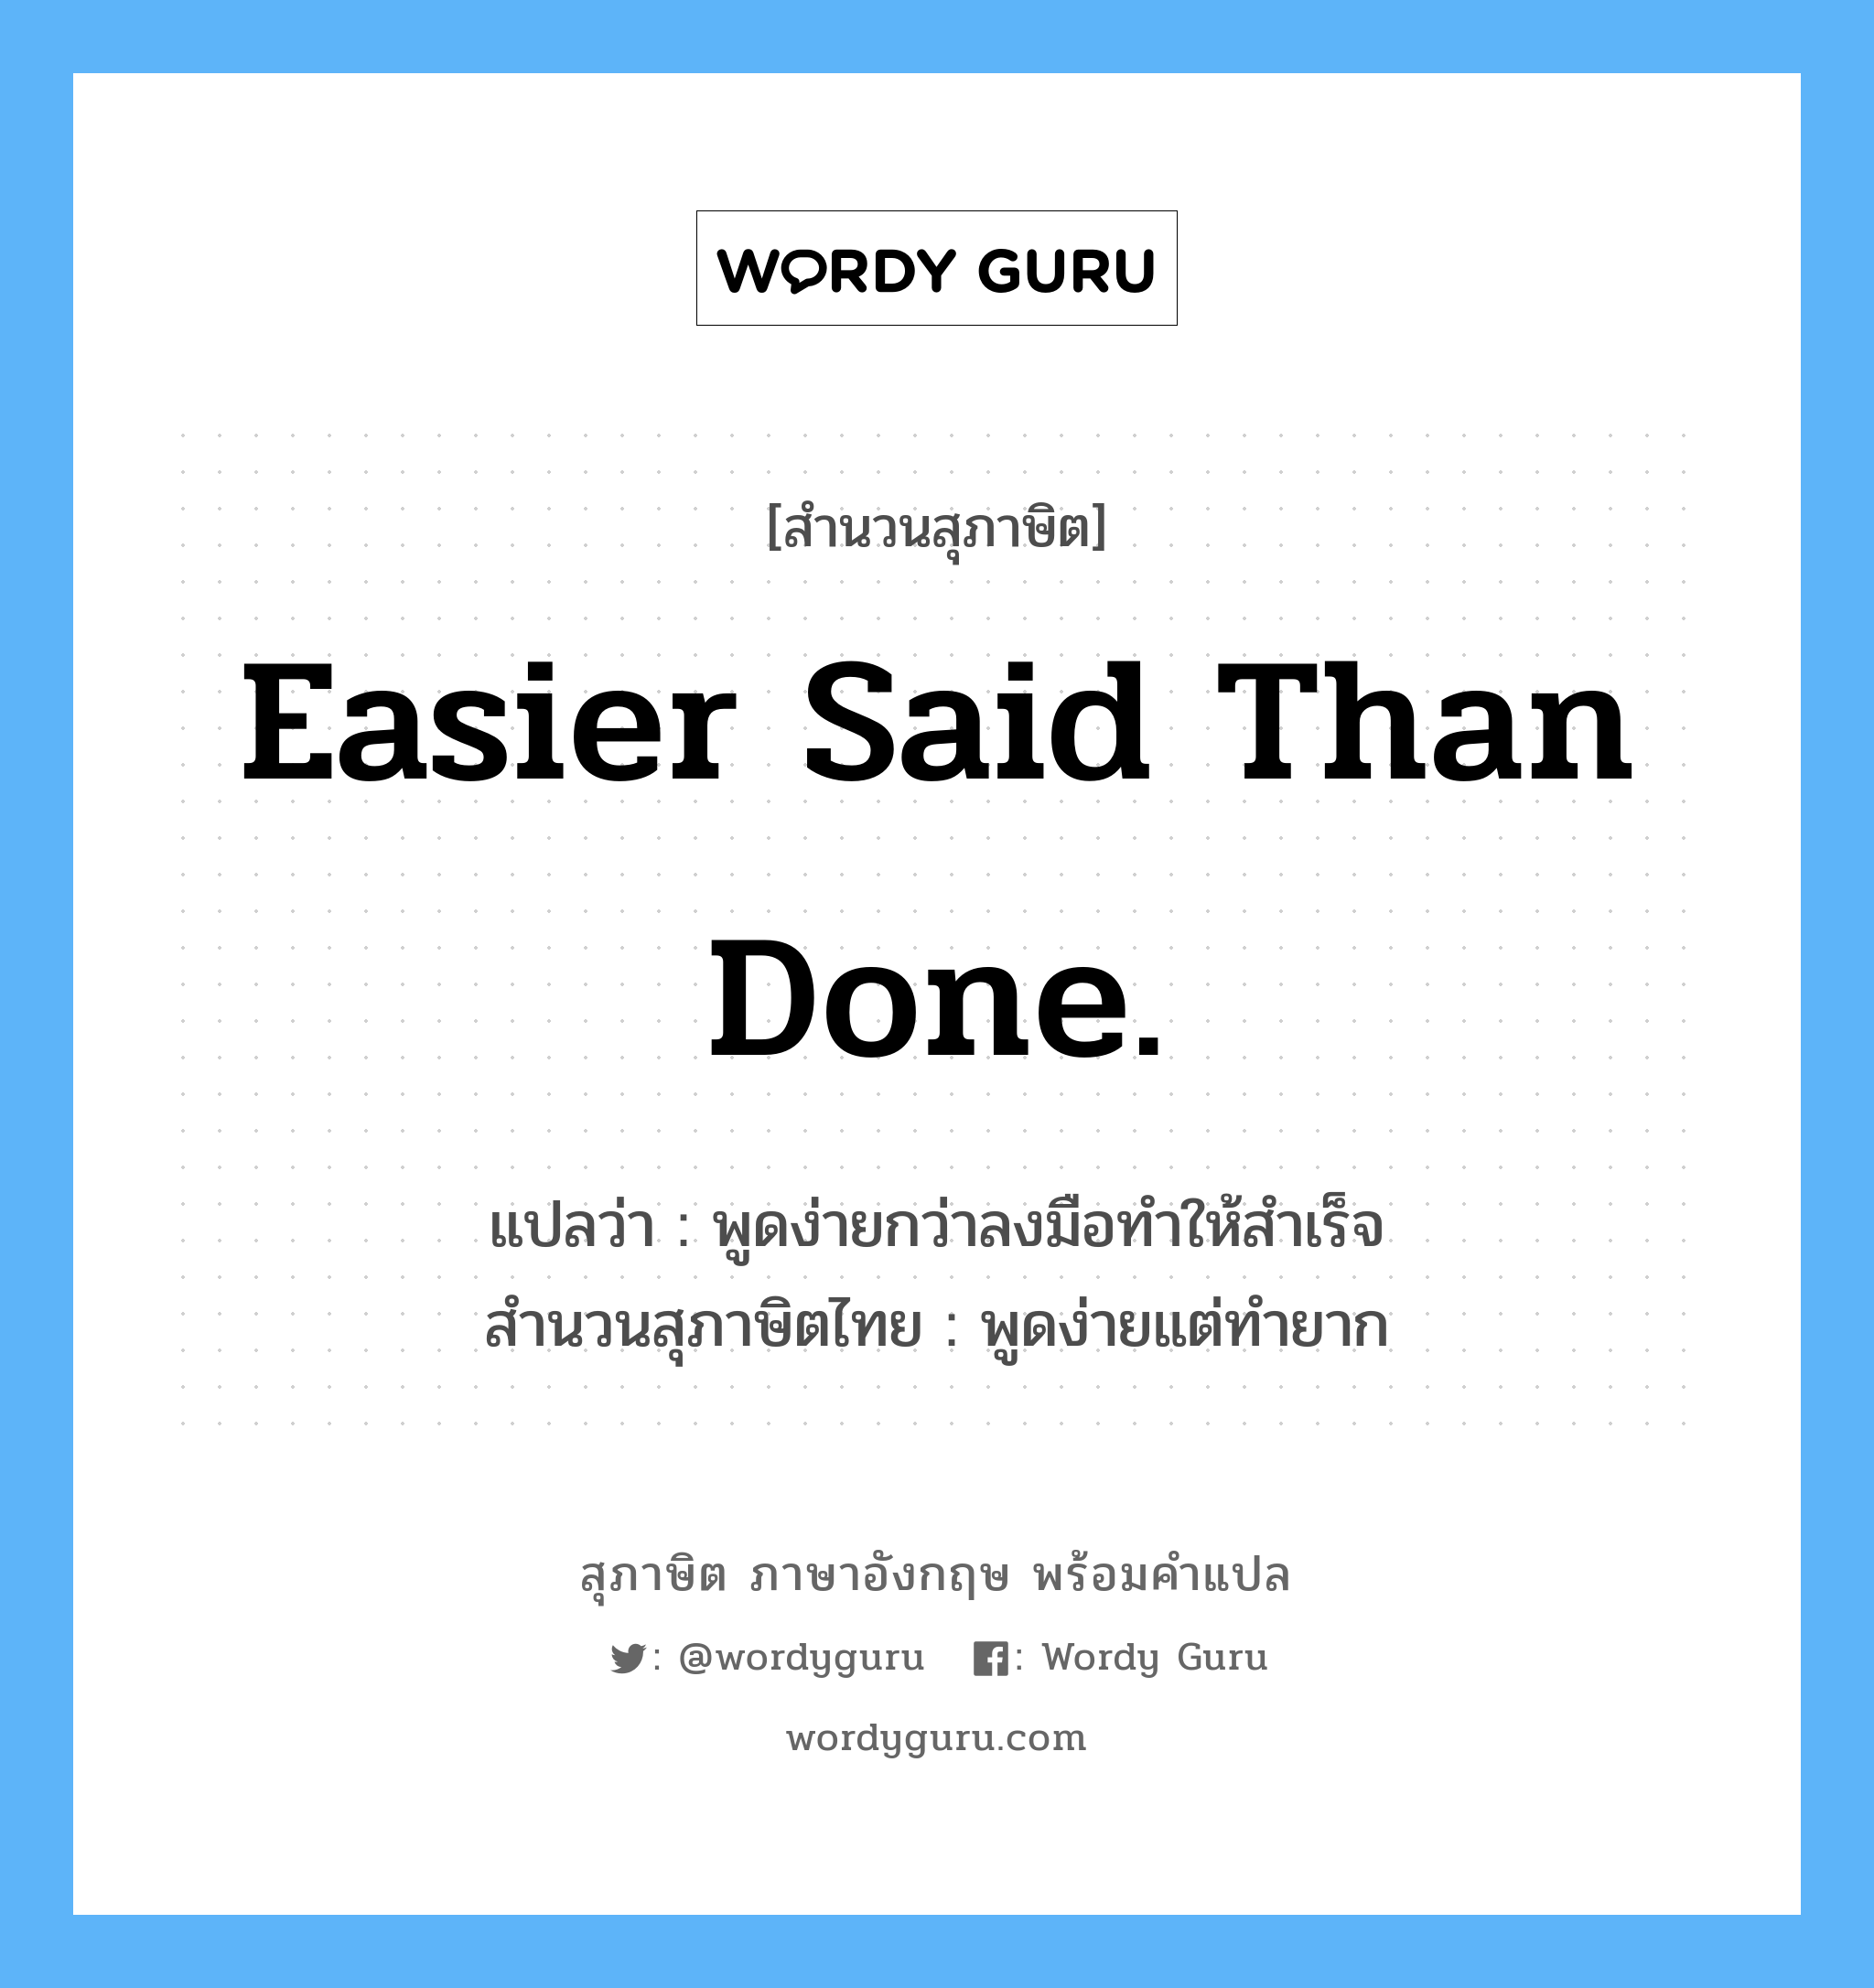 Easier said than done. แปลว่า?, สำนวนสุภาษิต ภาษาอังกฤษ Easier said than done. แปลว่า พูดง่ายกว่าลงมือทำให้สำเร็จ สำนวนสุภาษิตไทย พูดง่ายแต่ทำยาก